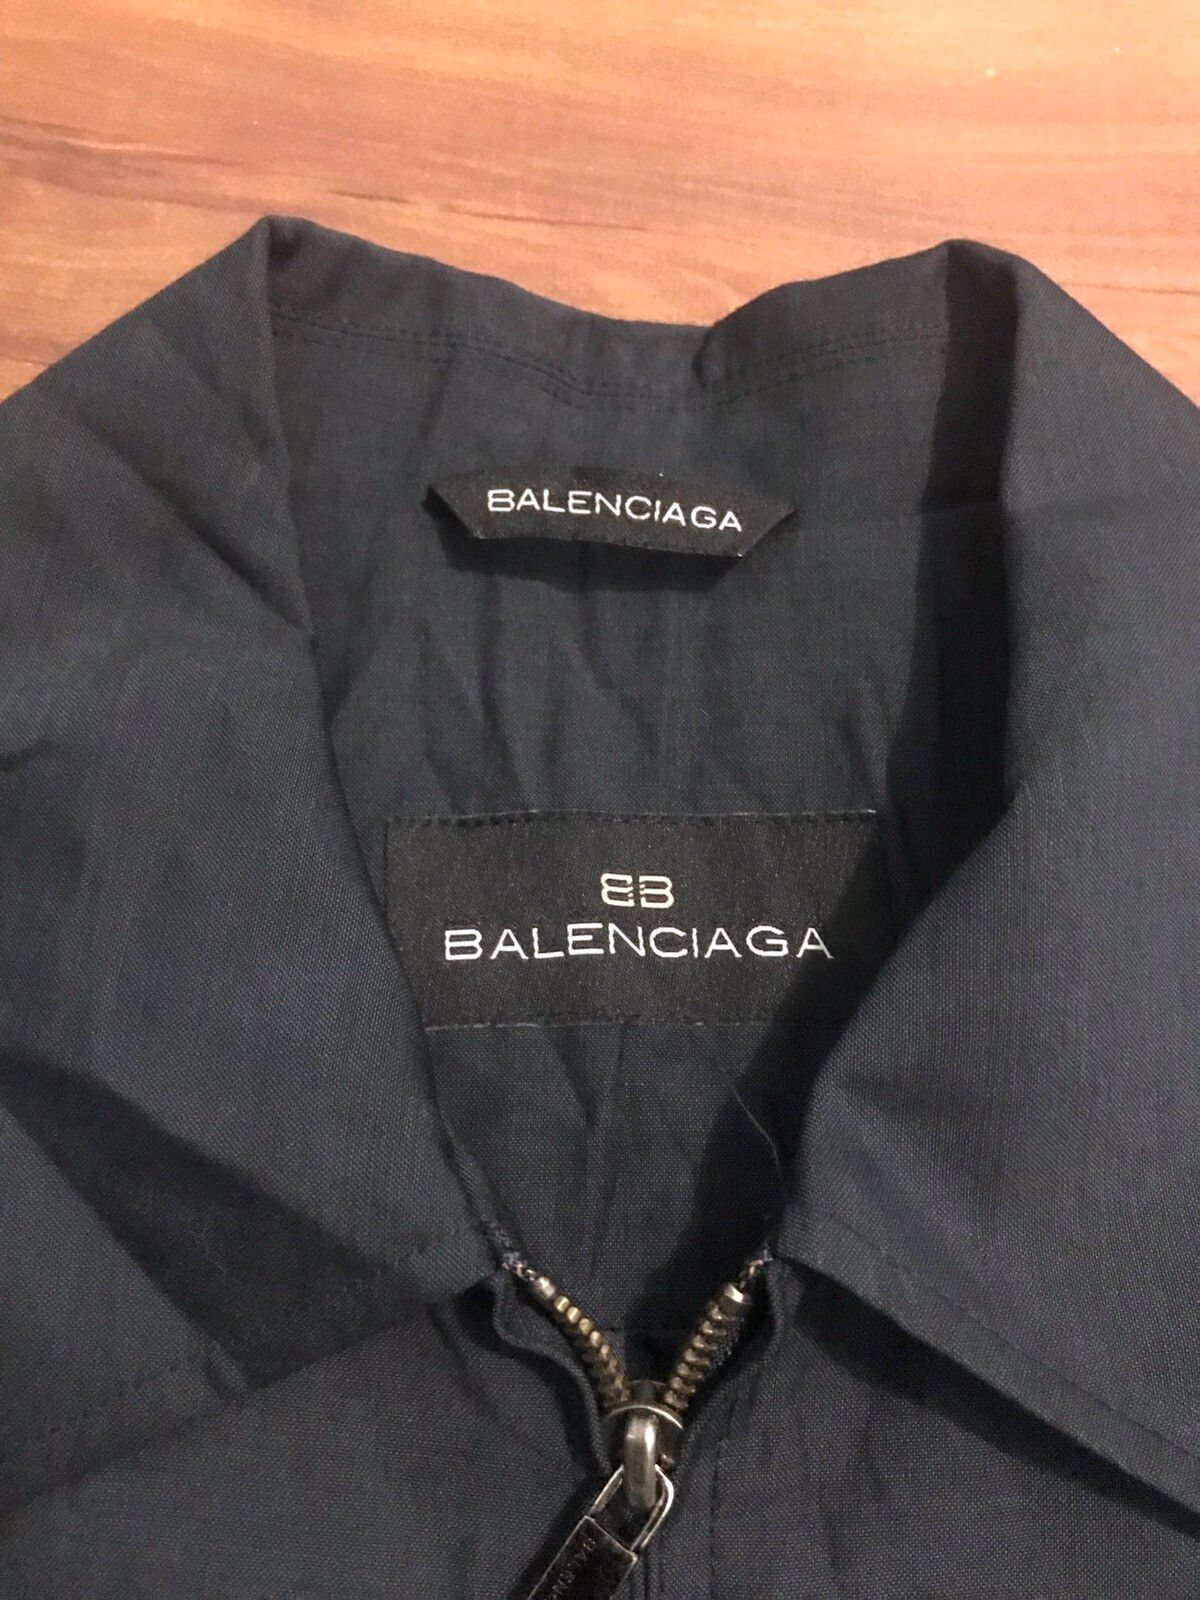 Balenciaga Balenciaga coach jacket | Grailed